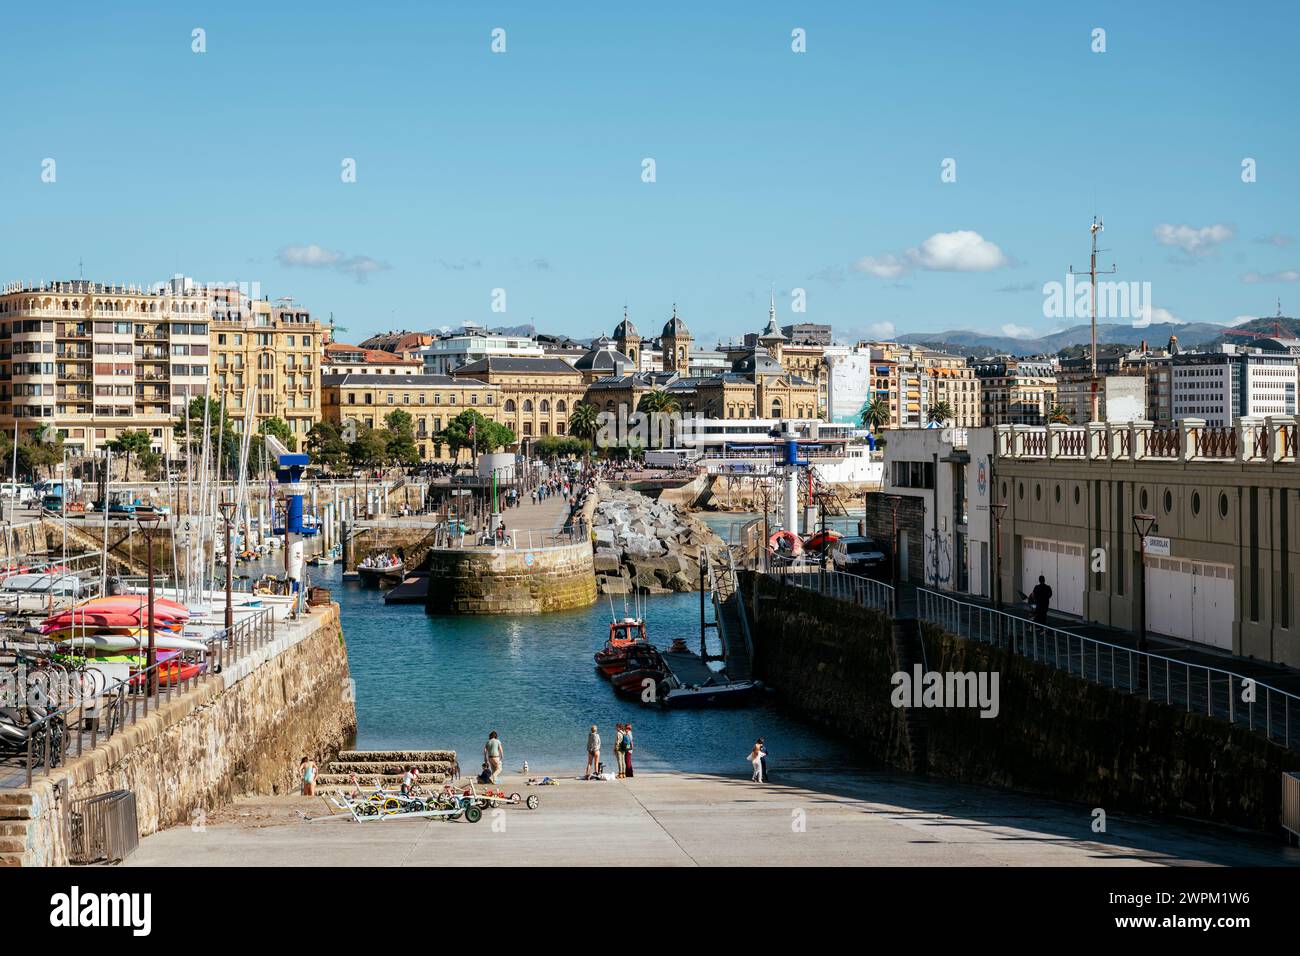 Vieille ville, Donostia, Saint-Sébastien, Gipuzkoa, pays Basque, Espagne, Europe Banque D'Images